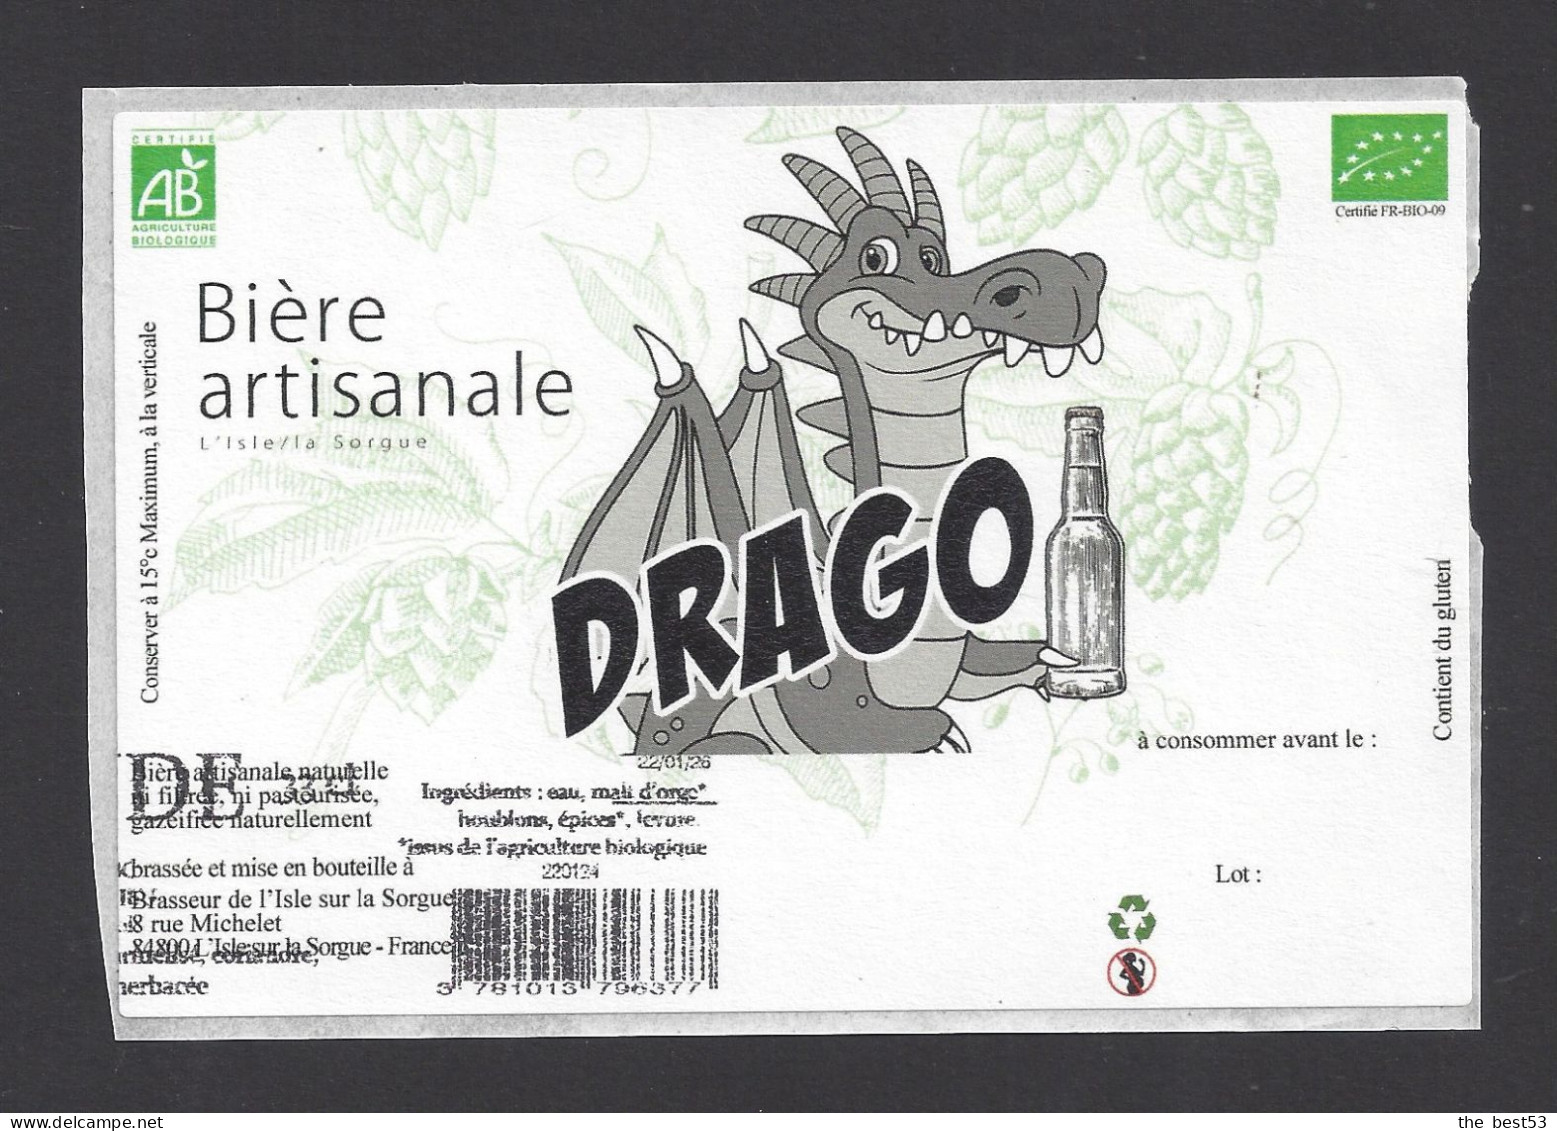 Etiquette De Bière  -  Drago  -  Brasserie  De L'Isle Sur La Sorgue (84) - Bière